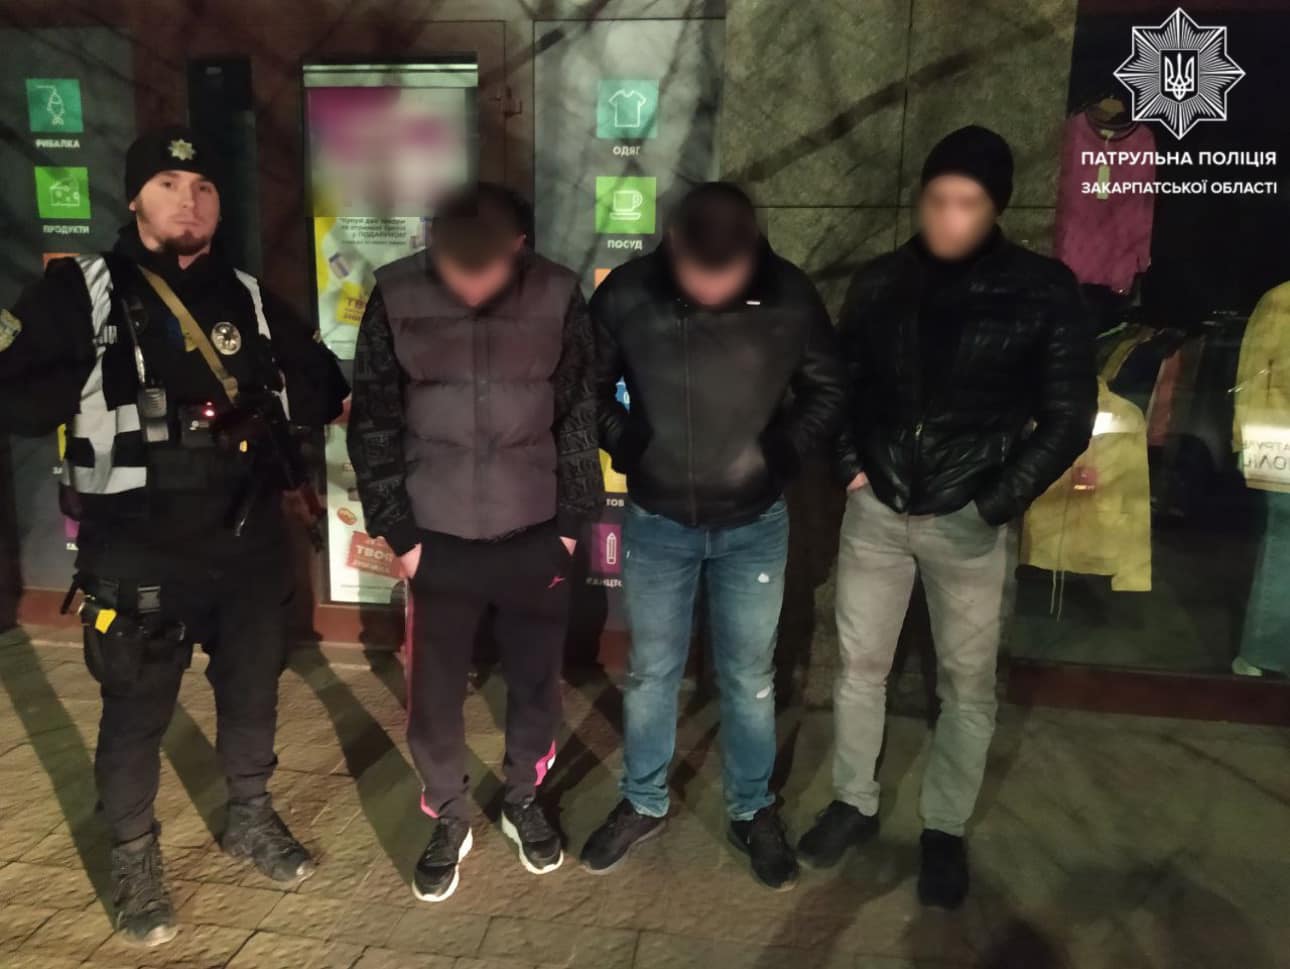 Уночі в Ужгороді пролунали постріли – затримано трьох молодиків з пістолетом, купою готівки та банківських карток різних осіб (ФОТО)